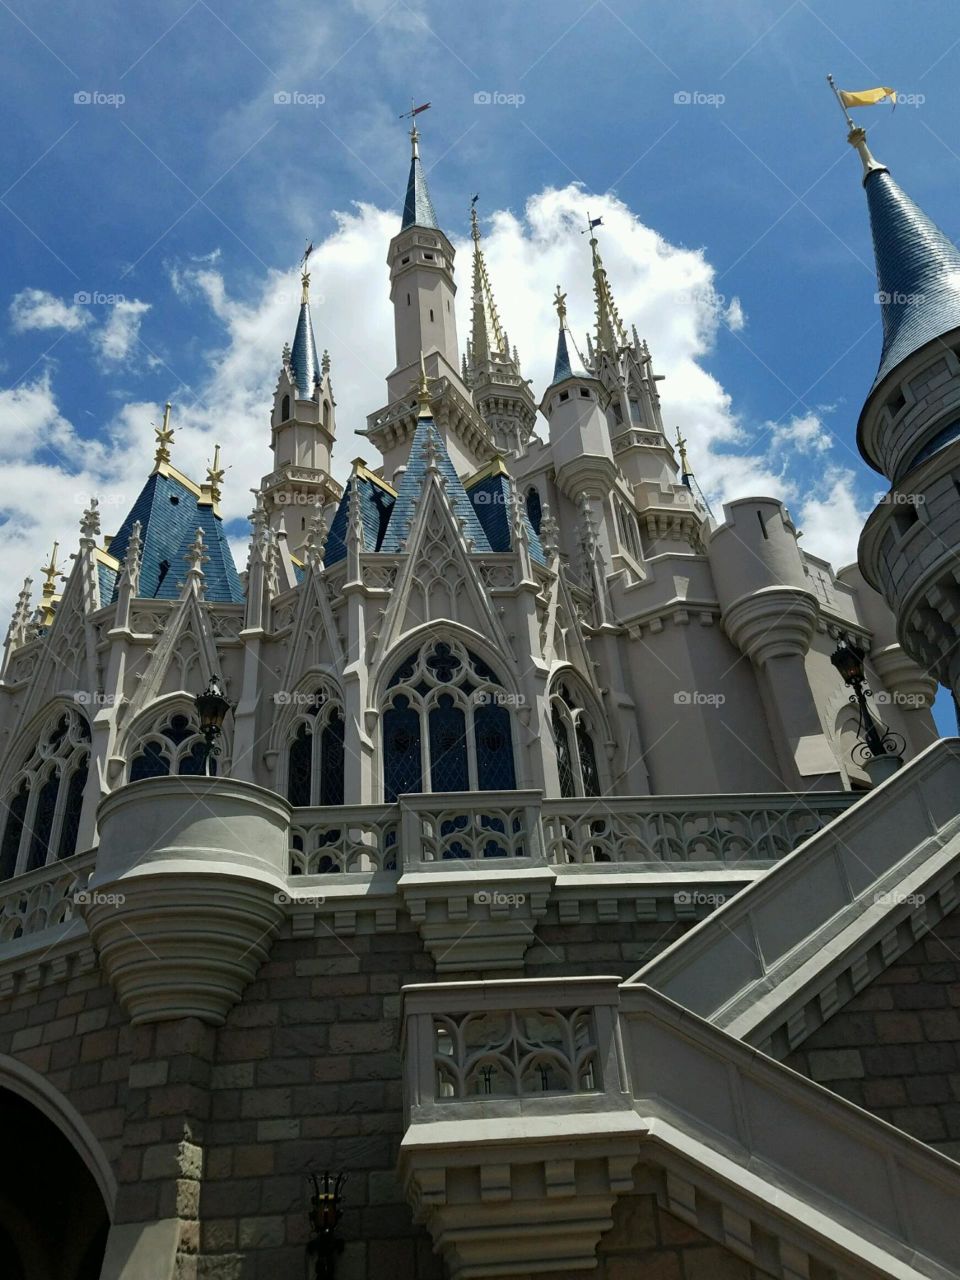 Magic Kingdom in Orlando